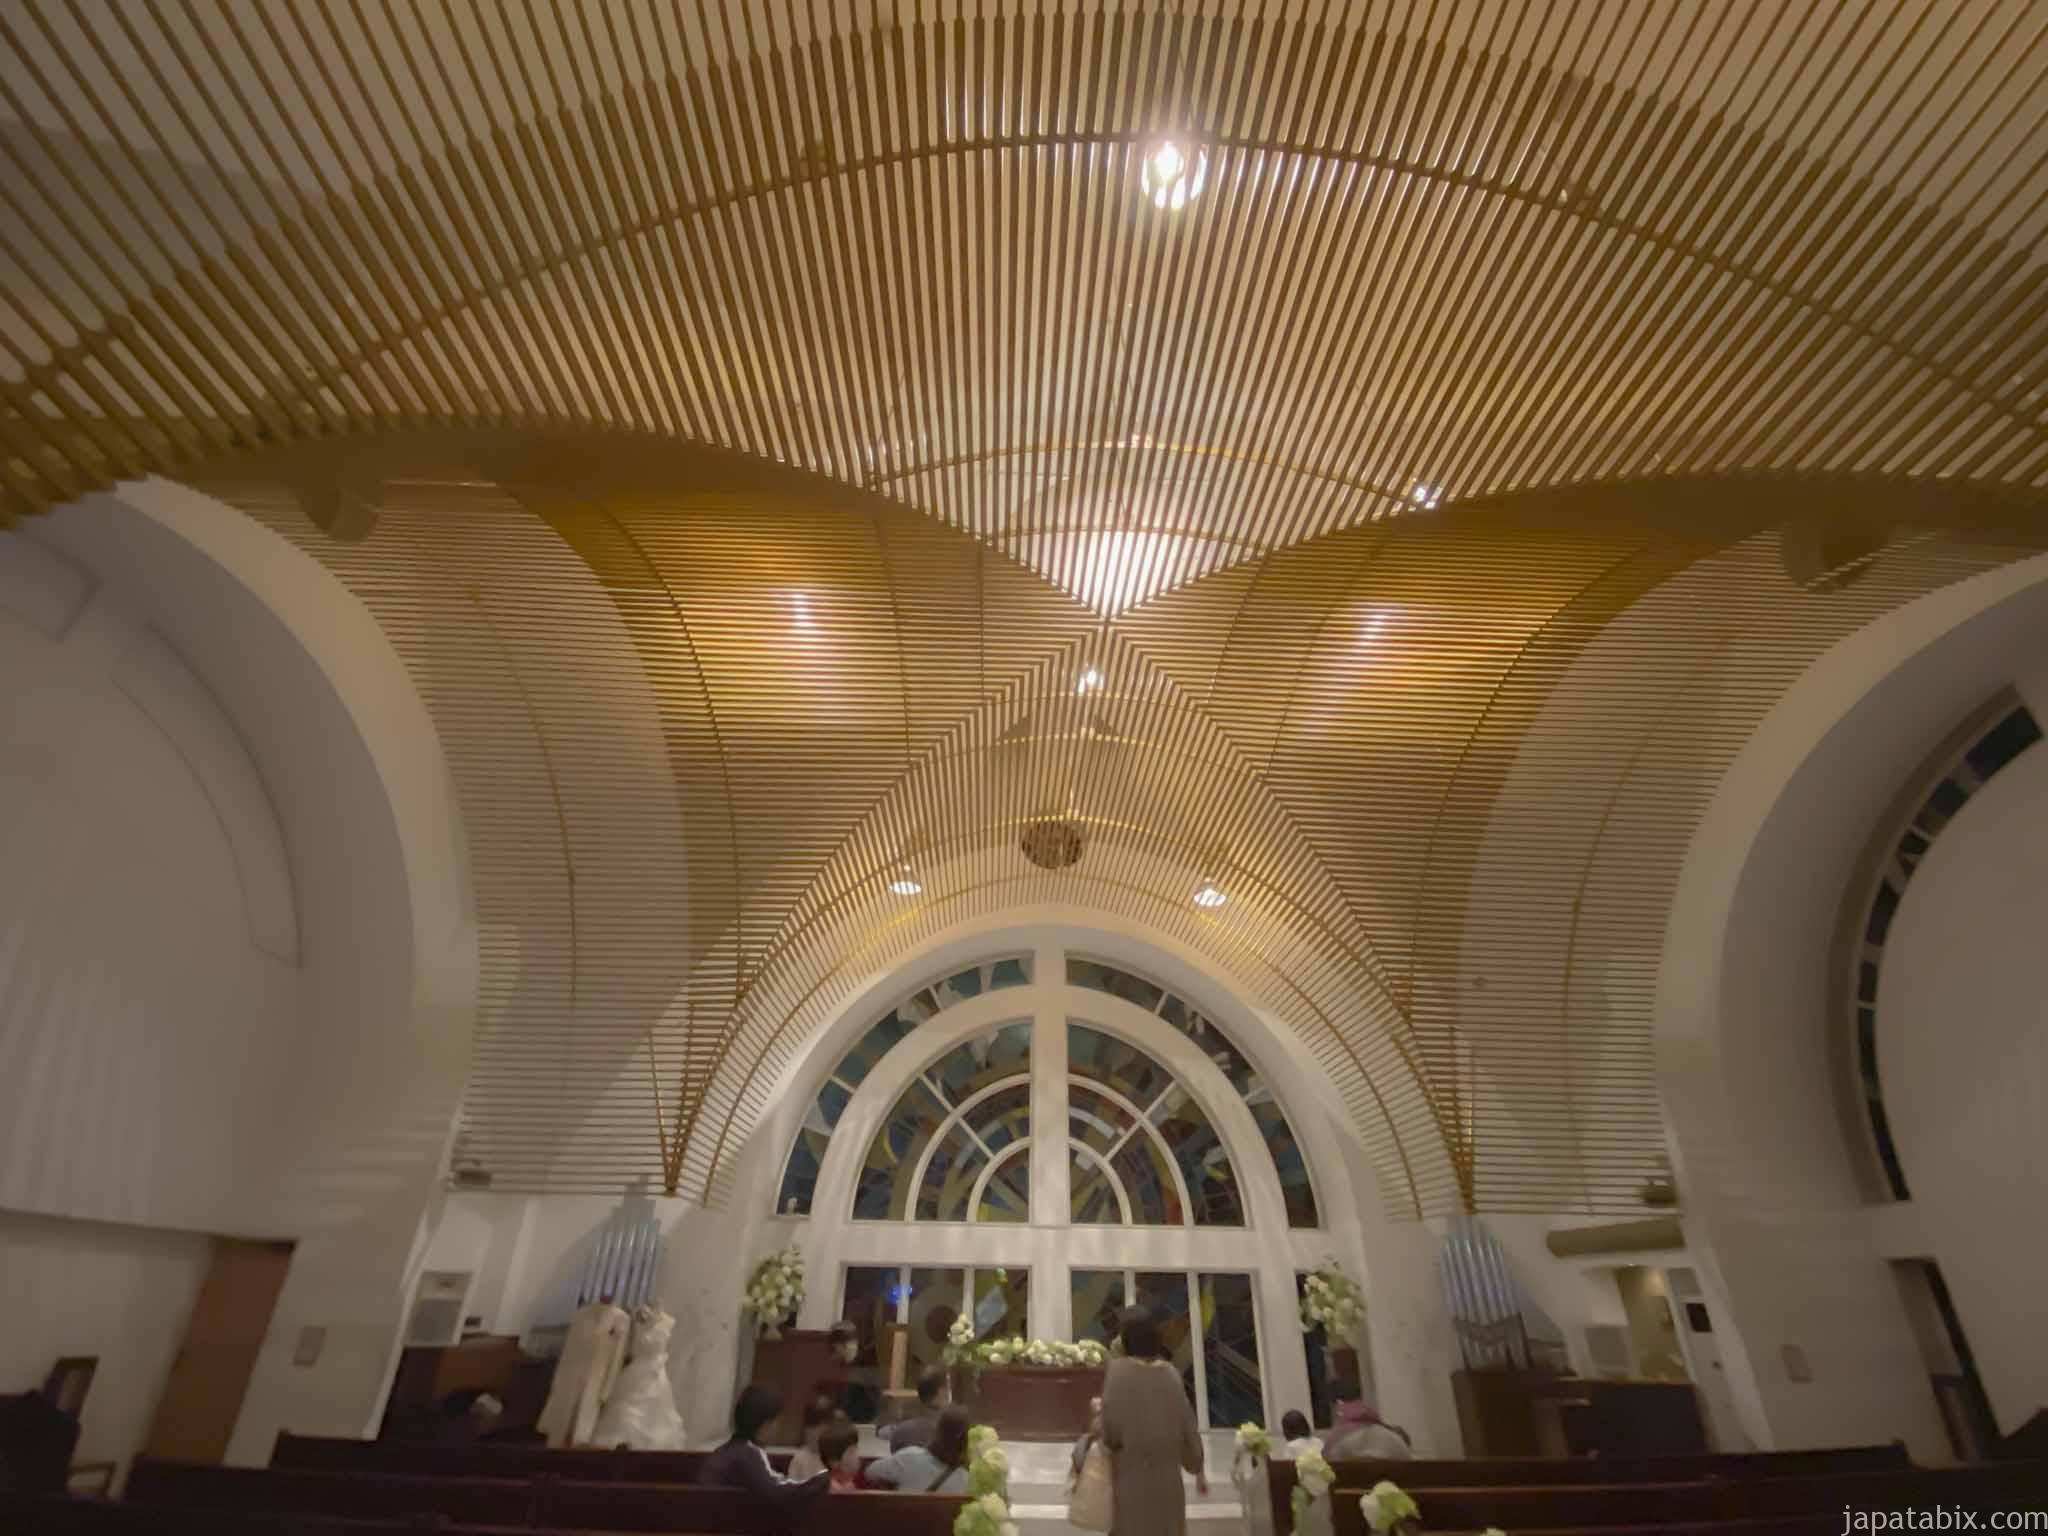 ホテルサンバレー那須 太陽の教会のプロジェクションマッピング